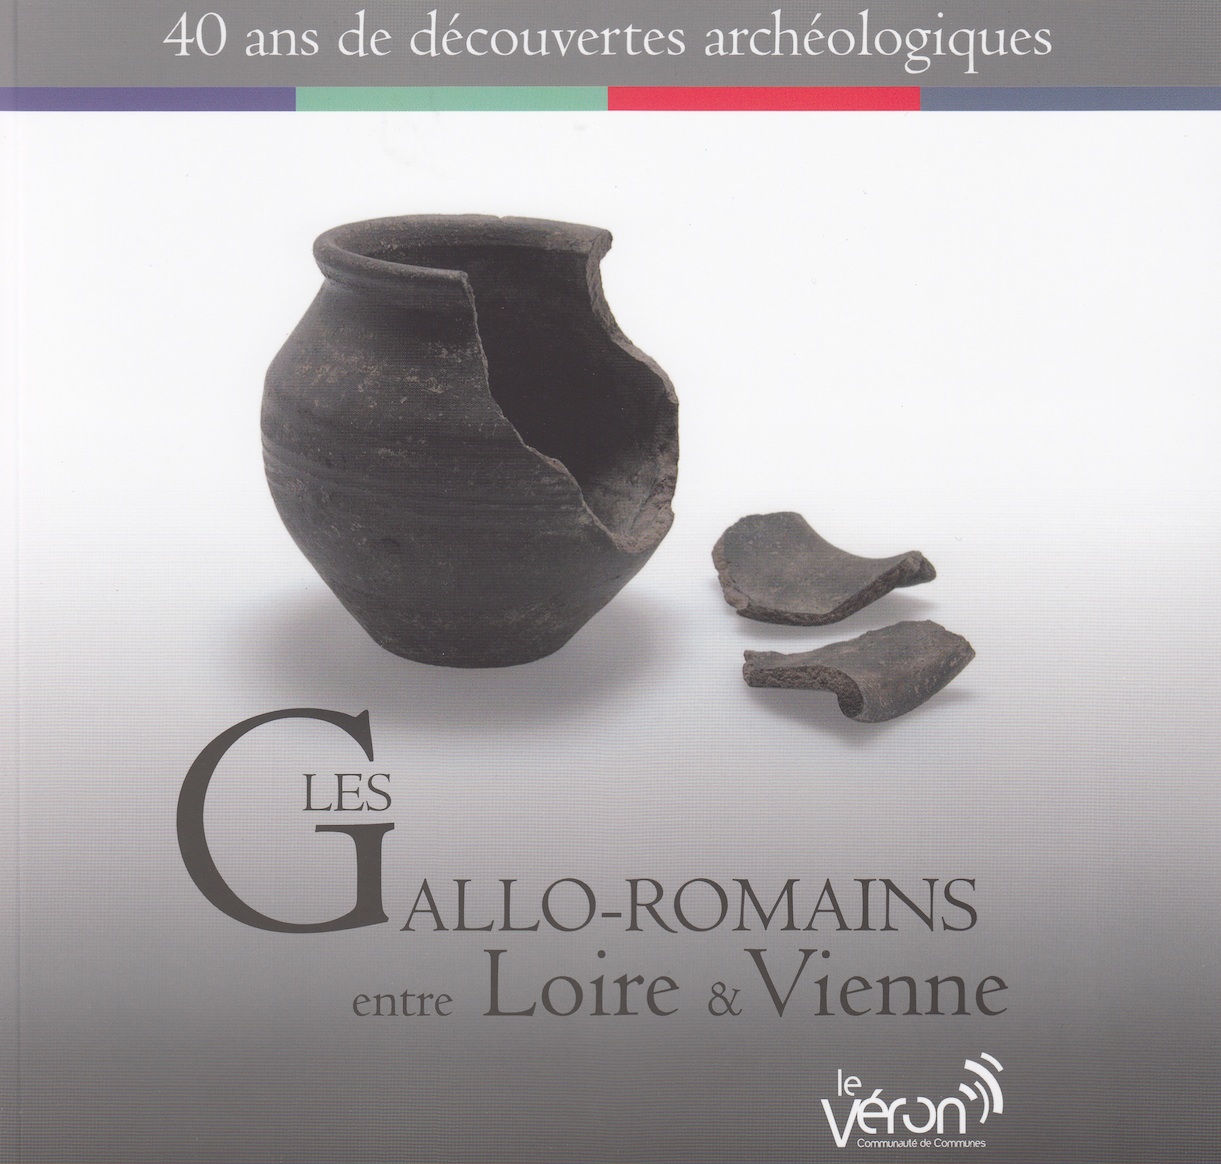 Les Gallo-romains entre Loire et Vienne. 40 ans de découvertes archéologiques, (cat. expo. Ecomusée du Véron, avr. 2012-nov. 2013), 2012, 128 p., nbr. ill.